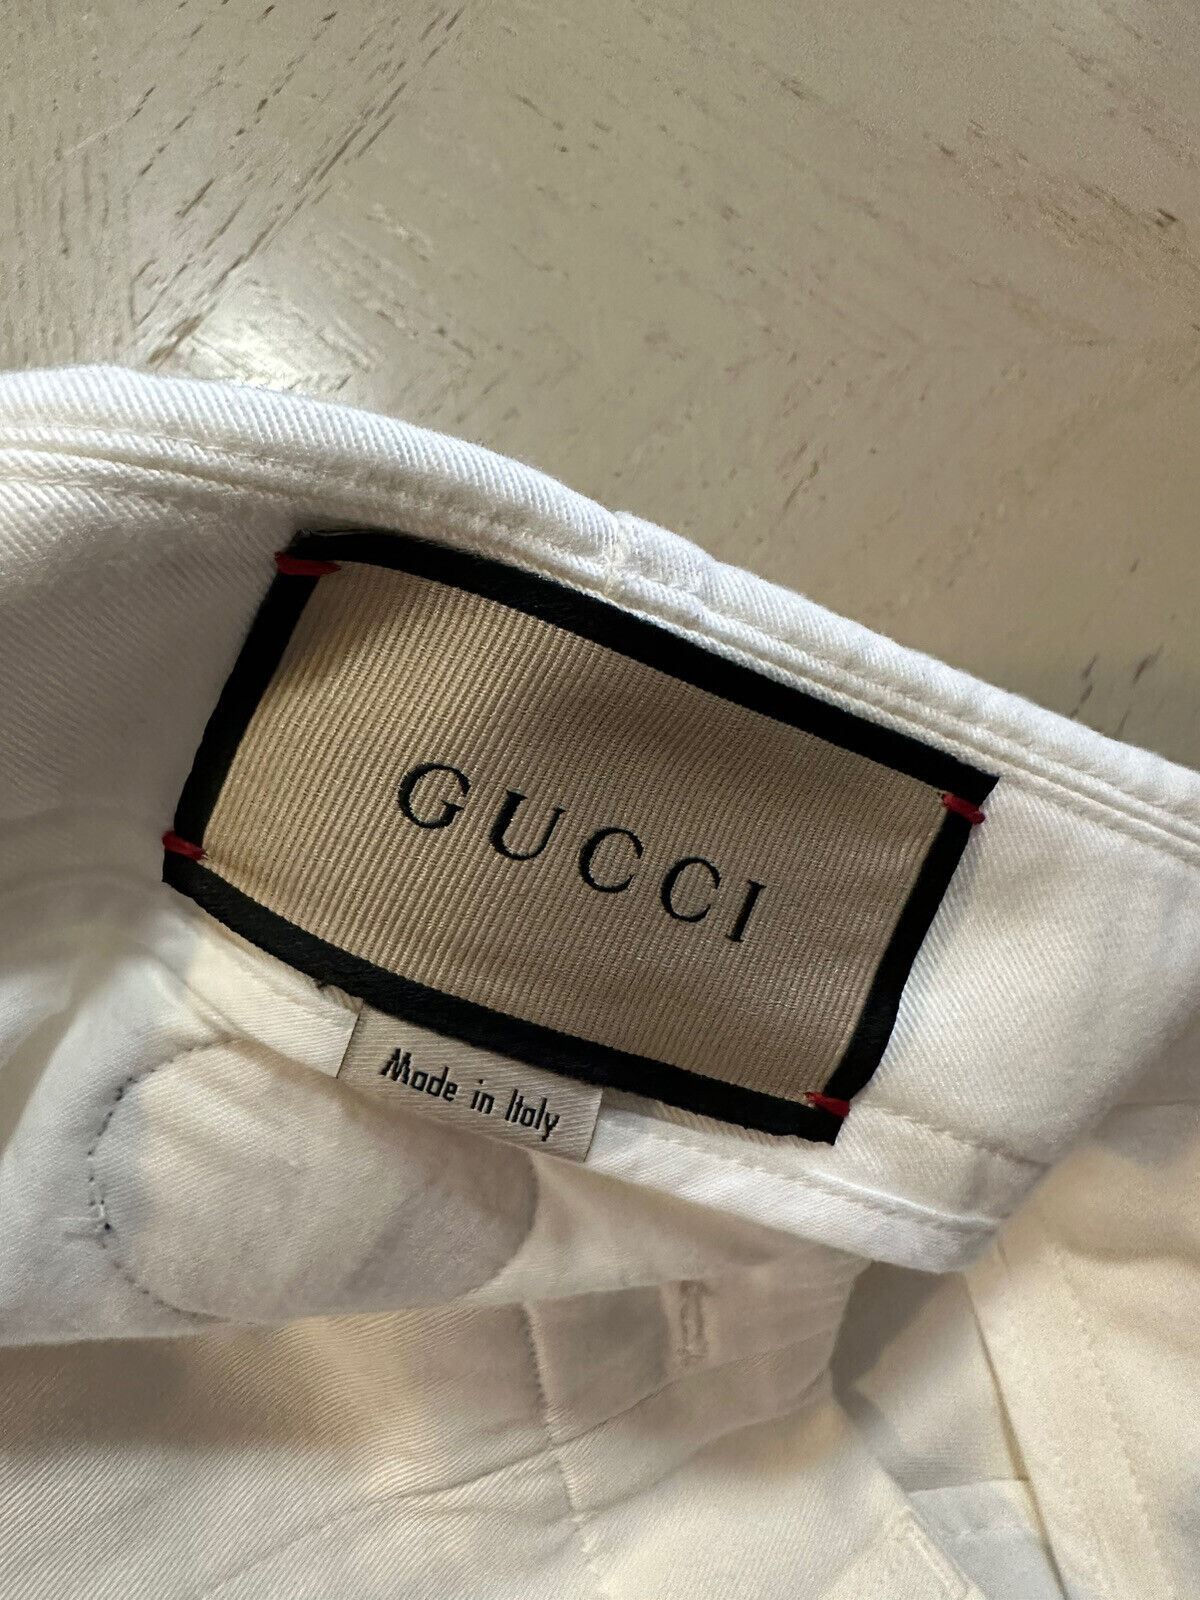 Neu mit Etikett: 880 $ Gucci Herren-Shorts aus Militär-Baumwolle, Farbe Milch, 30 US/46 Eu, Italien